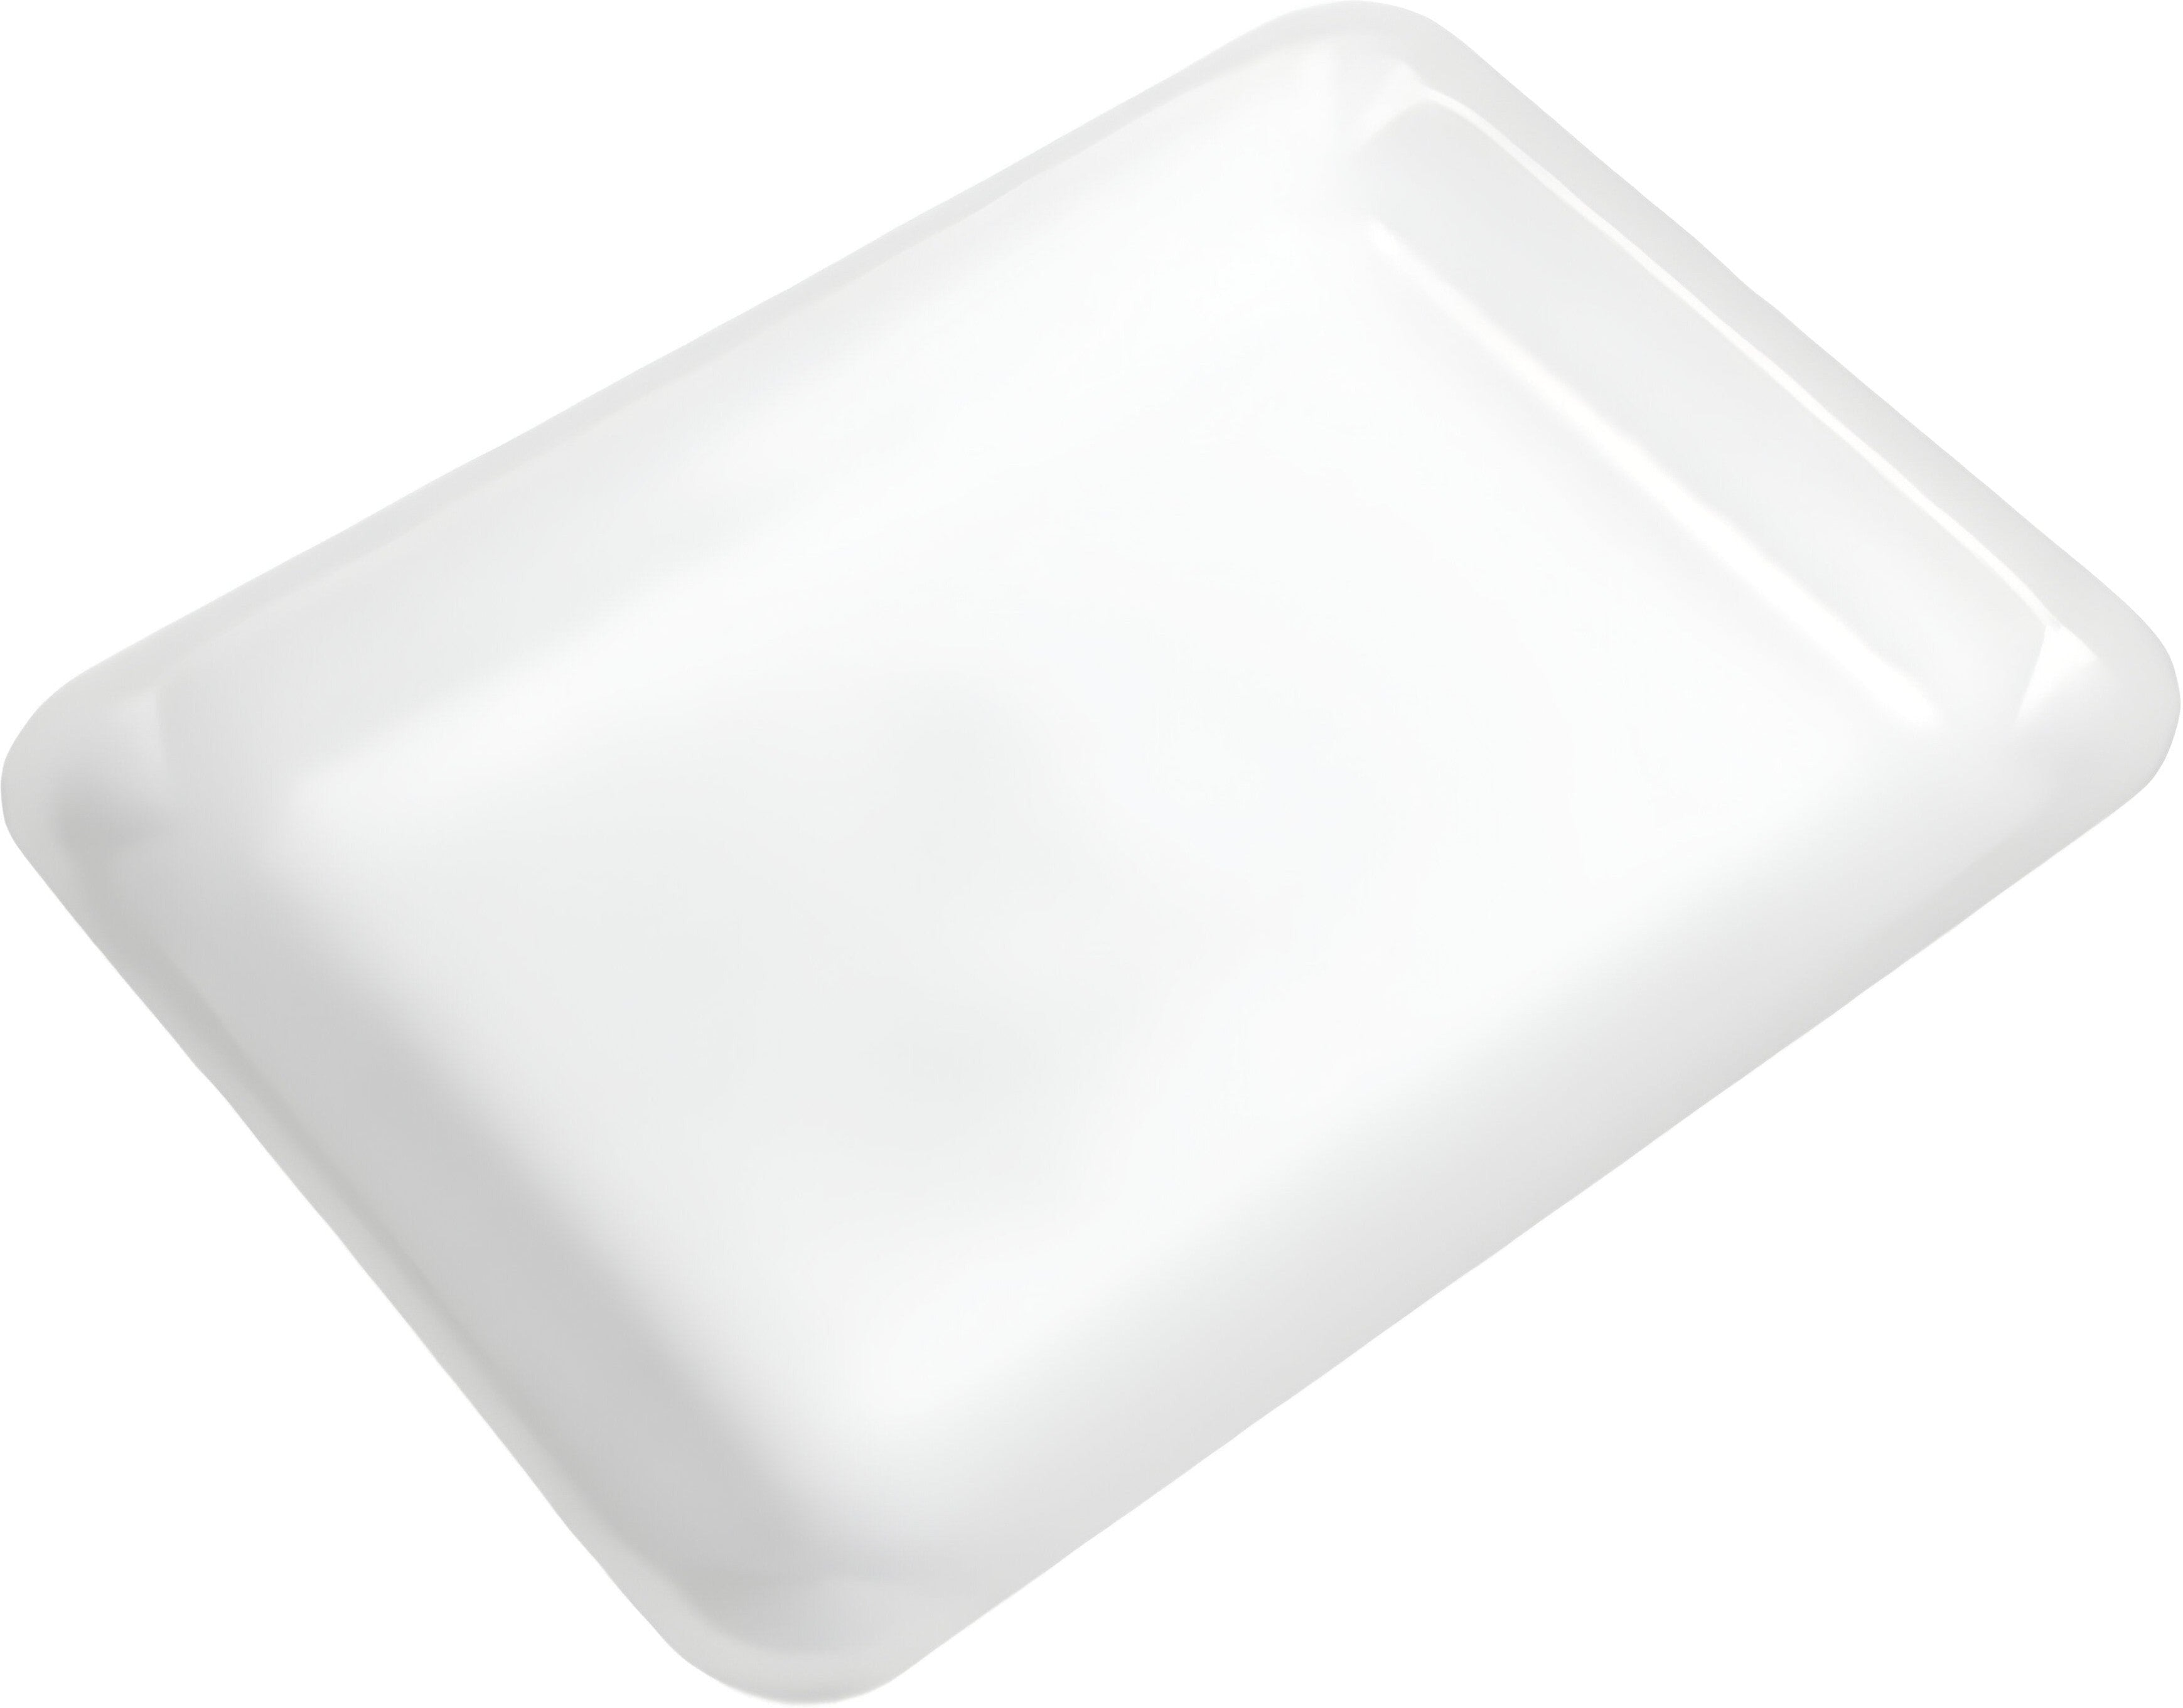 CKF Inc. - 14 6" x 6" x 0.9", 14 Foam Meat Packaging Tray, 500/Cs - 88114